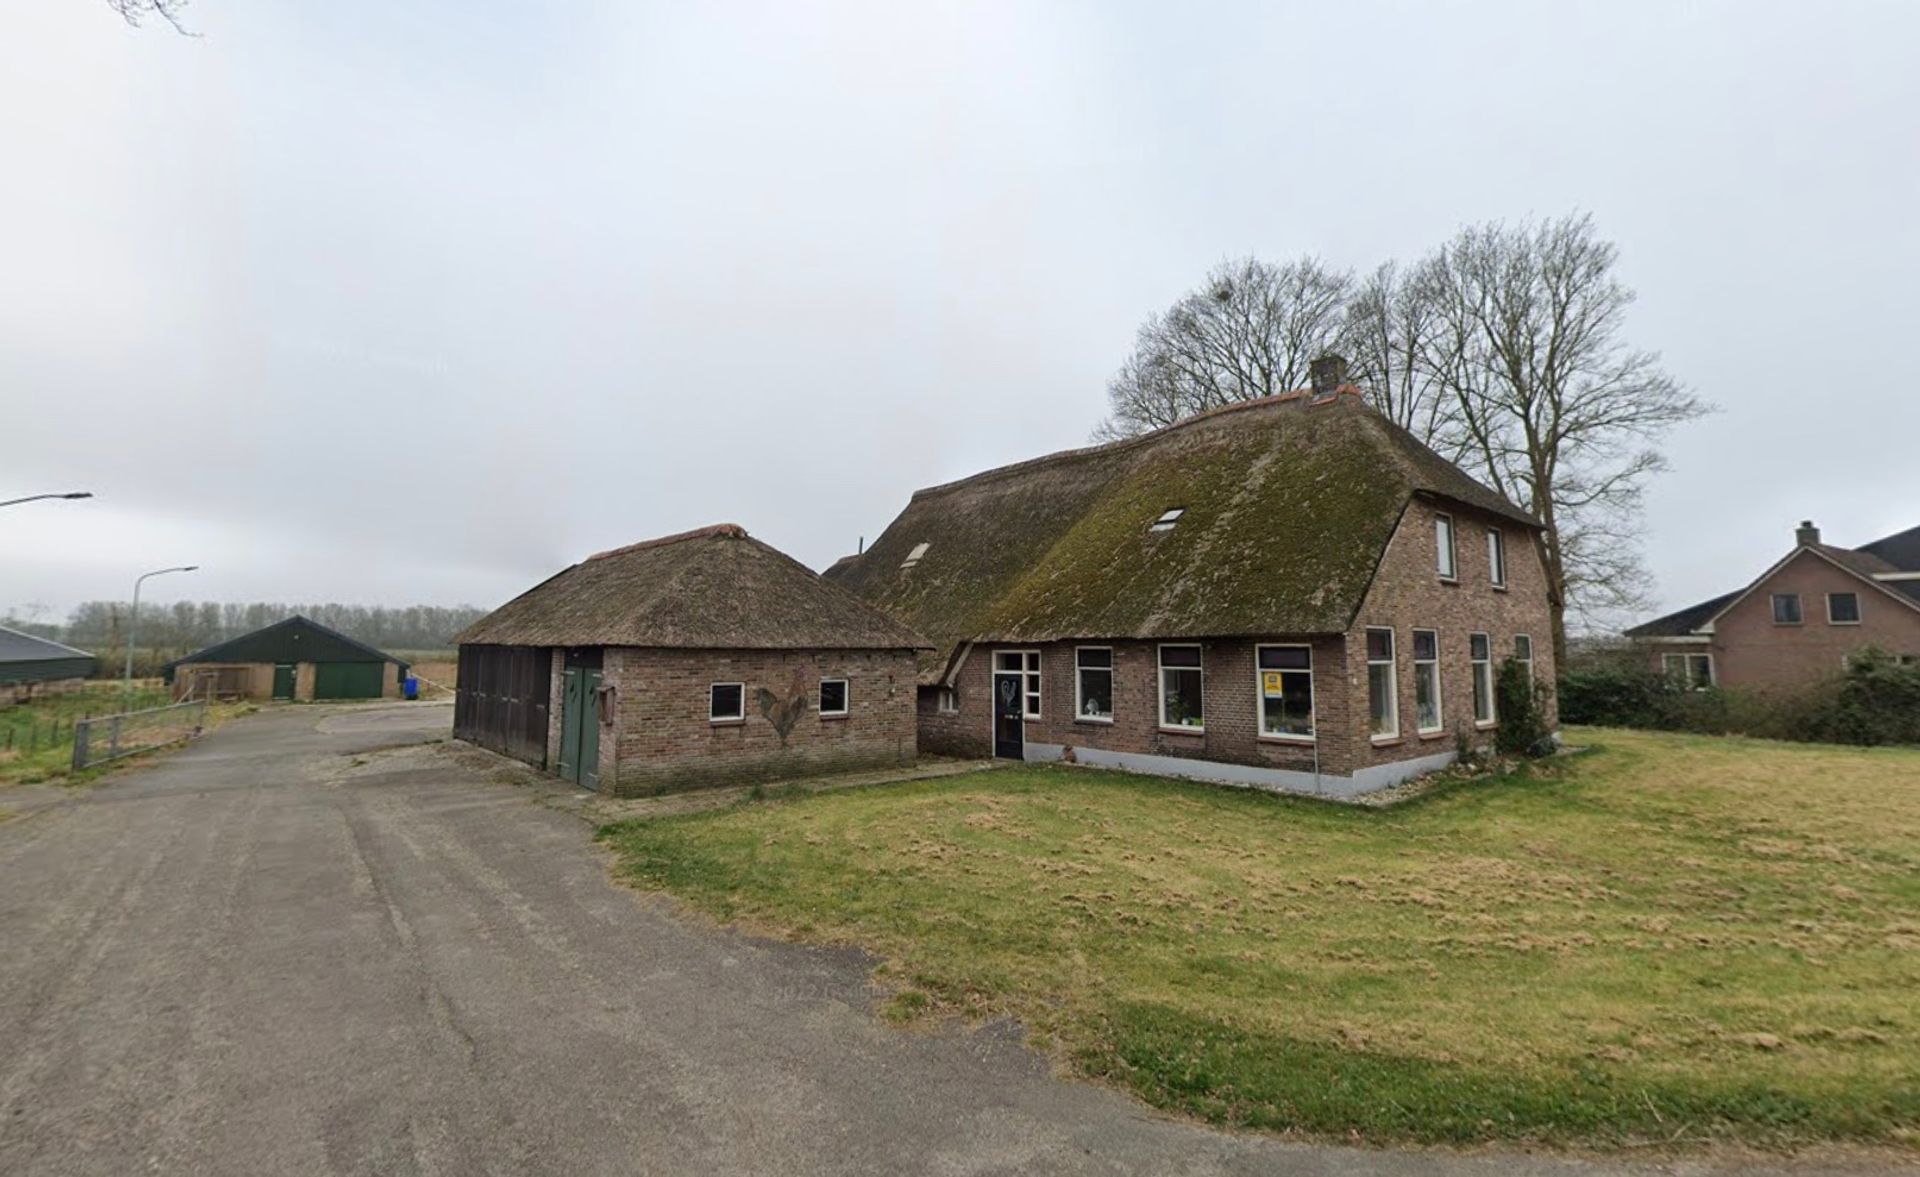 Noord-Brabant koopt boerderijen in provincies ze vervolgens stil te leggen - Joop - BNNVARA